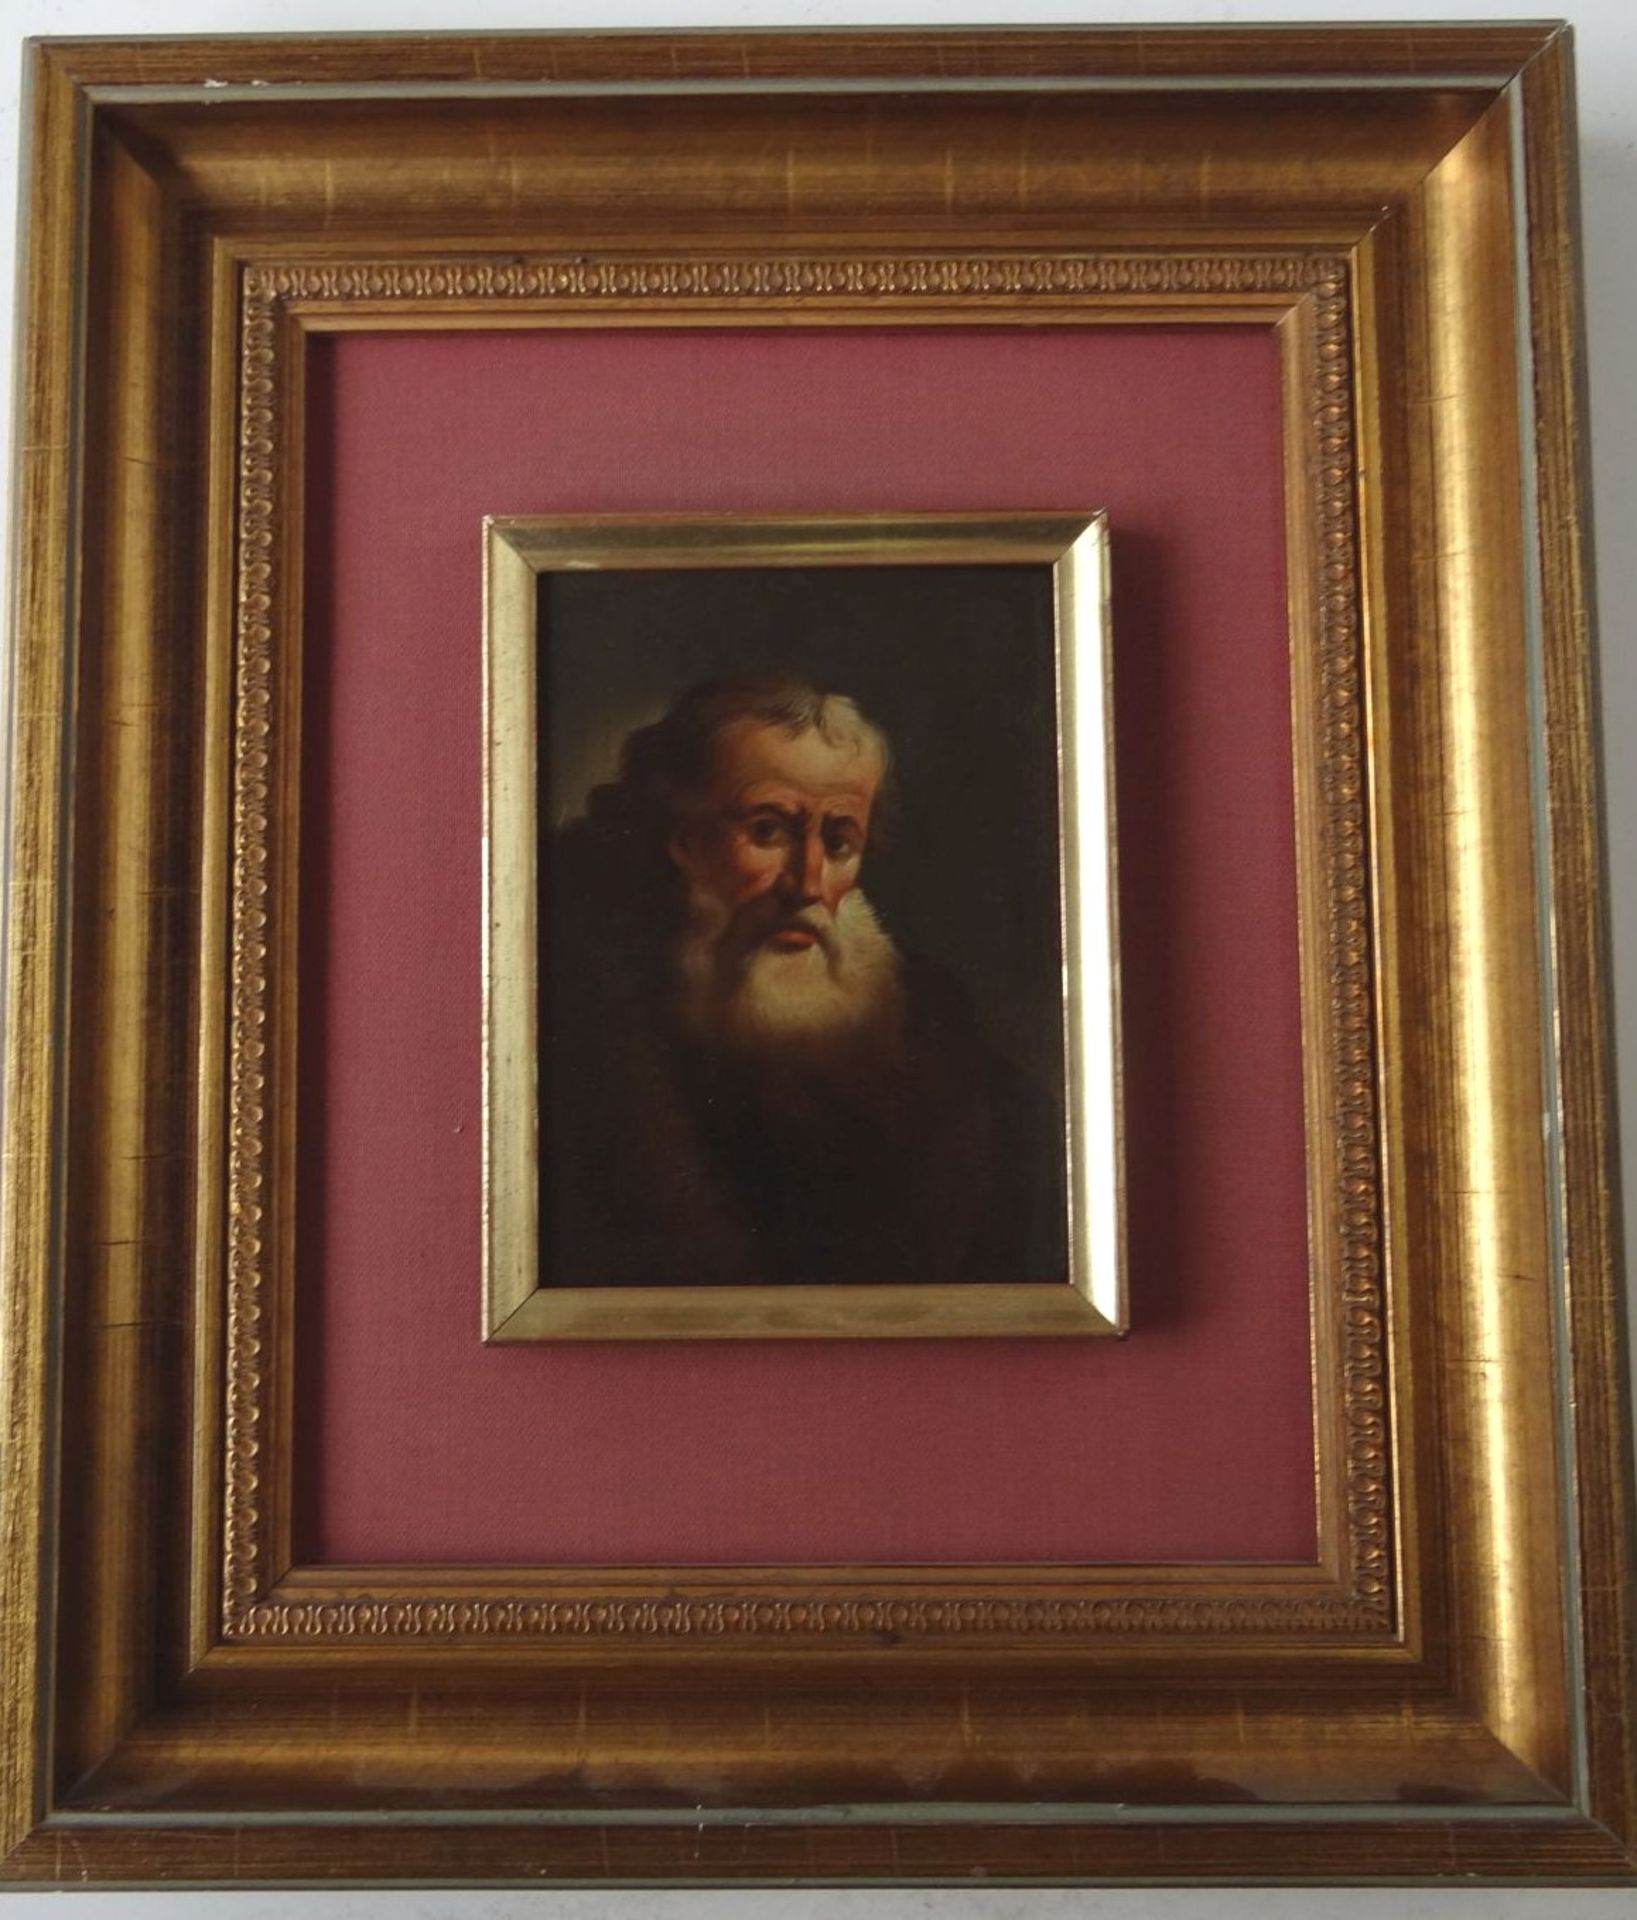 anonymes. Portrait eines alten Mannes, Öl/Holz, 13x10 cm, gerahmt, RG 29x25 cm, verso Monogramm "DR - Bild 2 aus 3